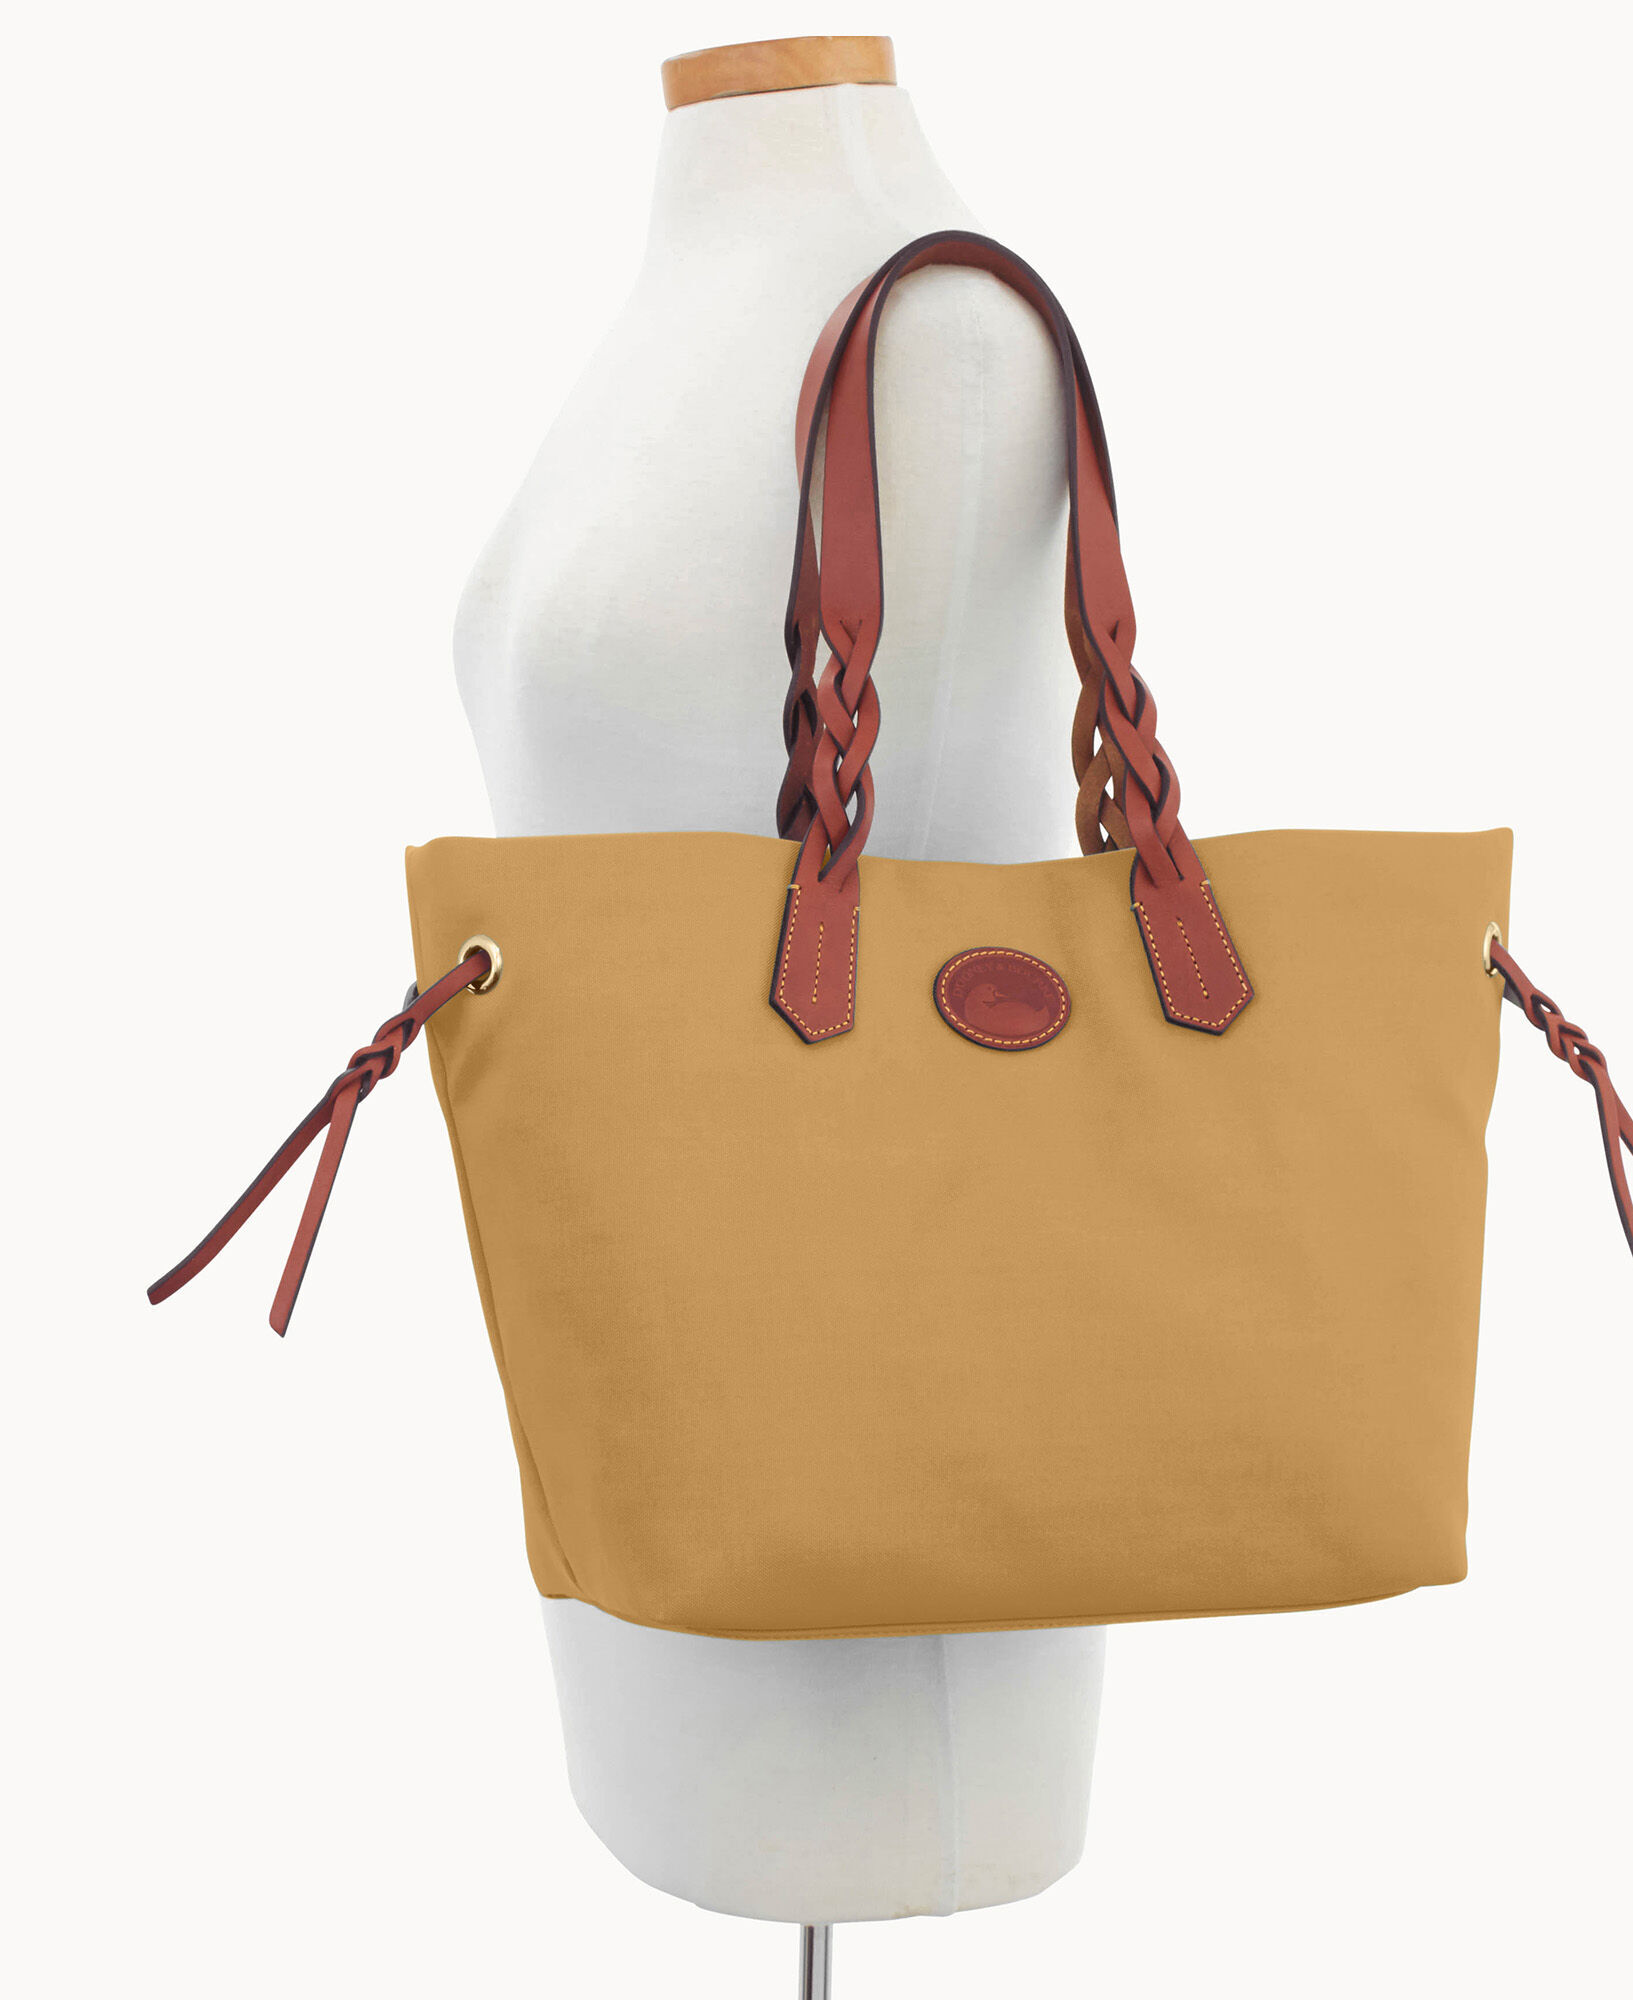 Wingman Bag: Women's Designer Small Tote Bag – Think Royln